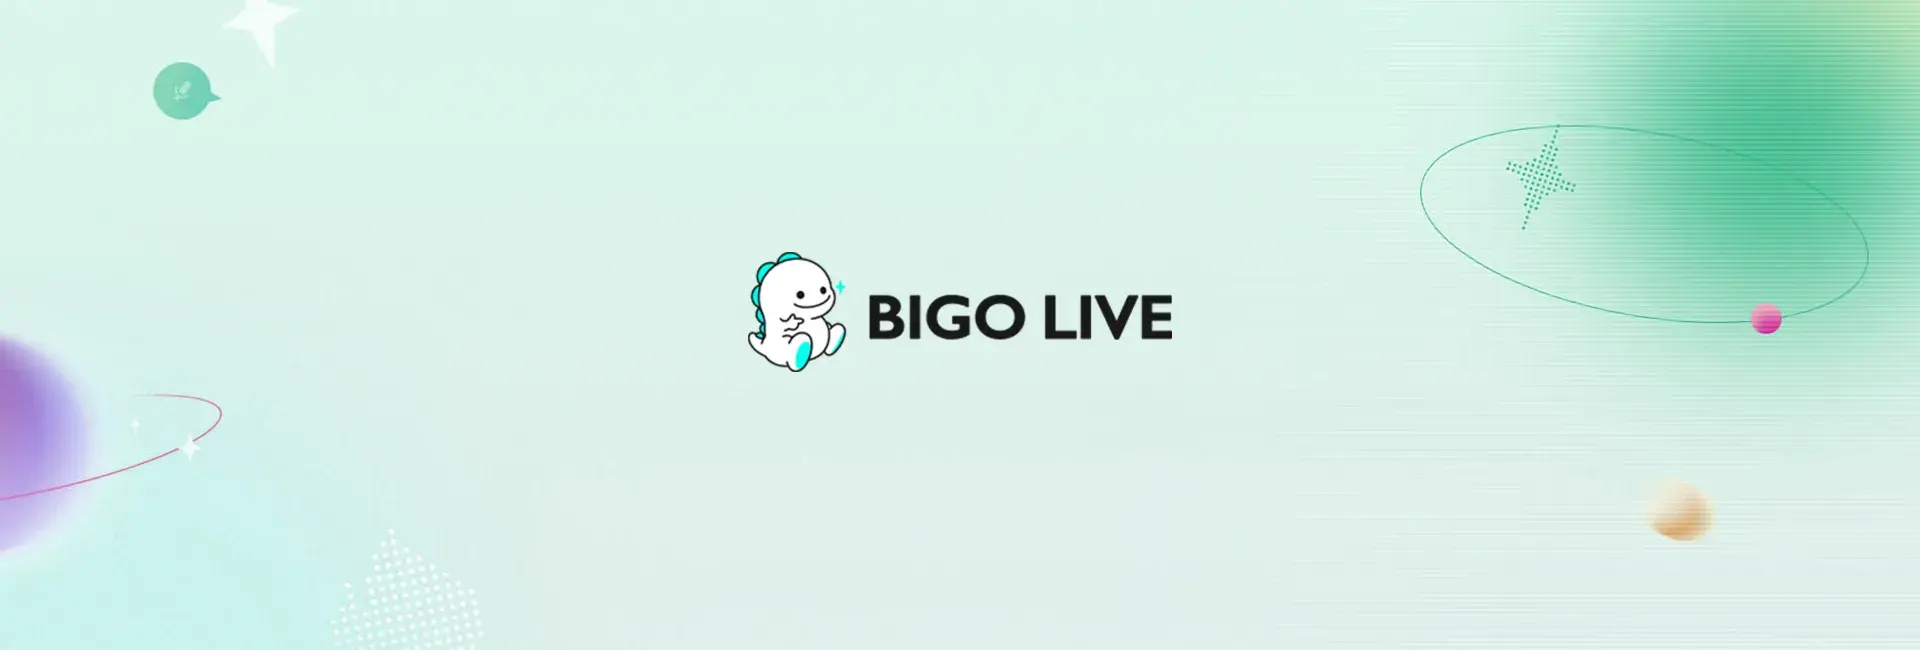 Bigo Live - 235 Diamonds (Global)	